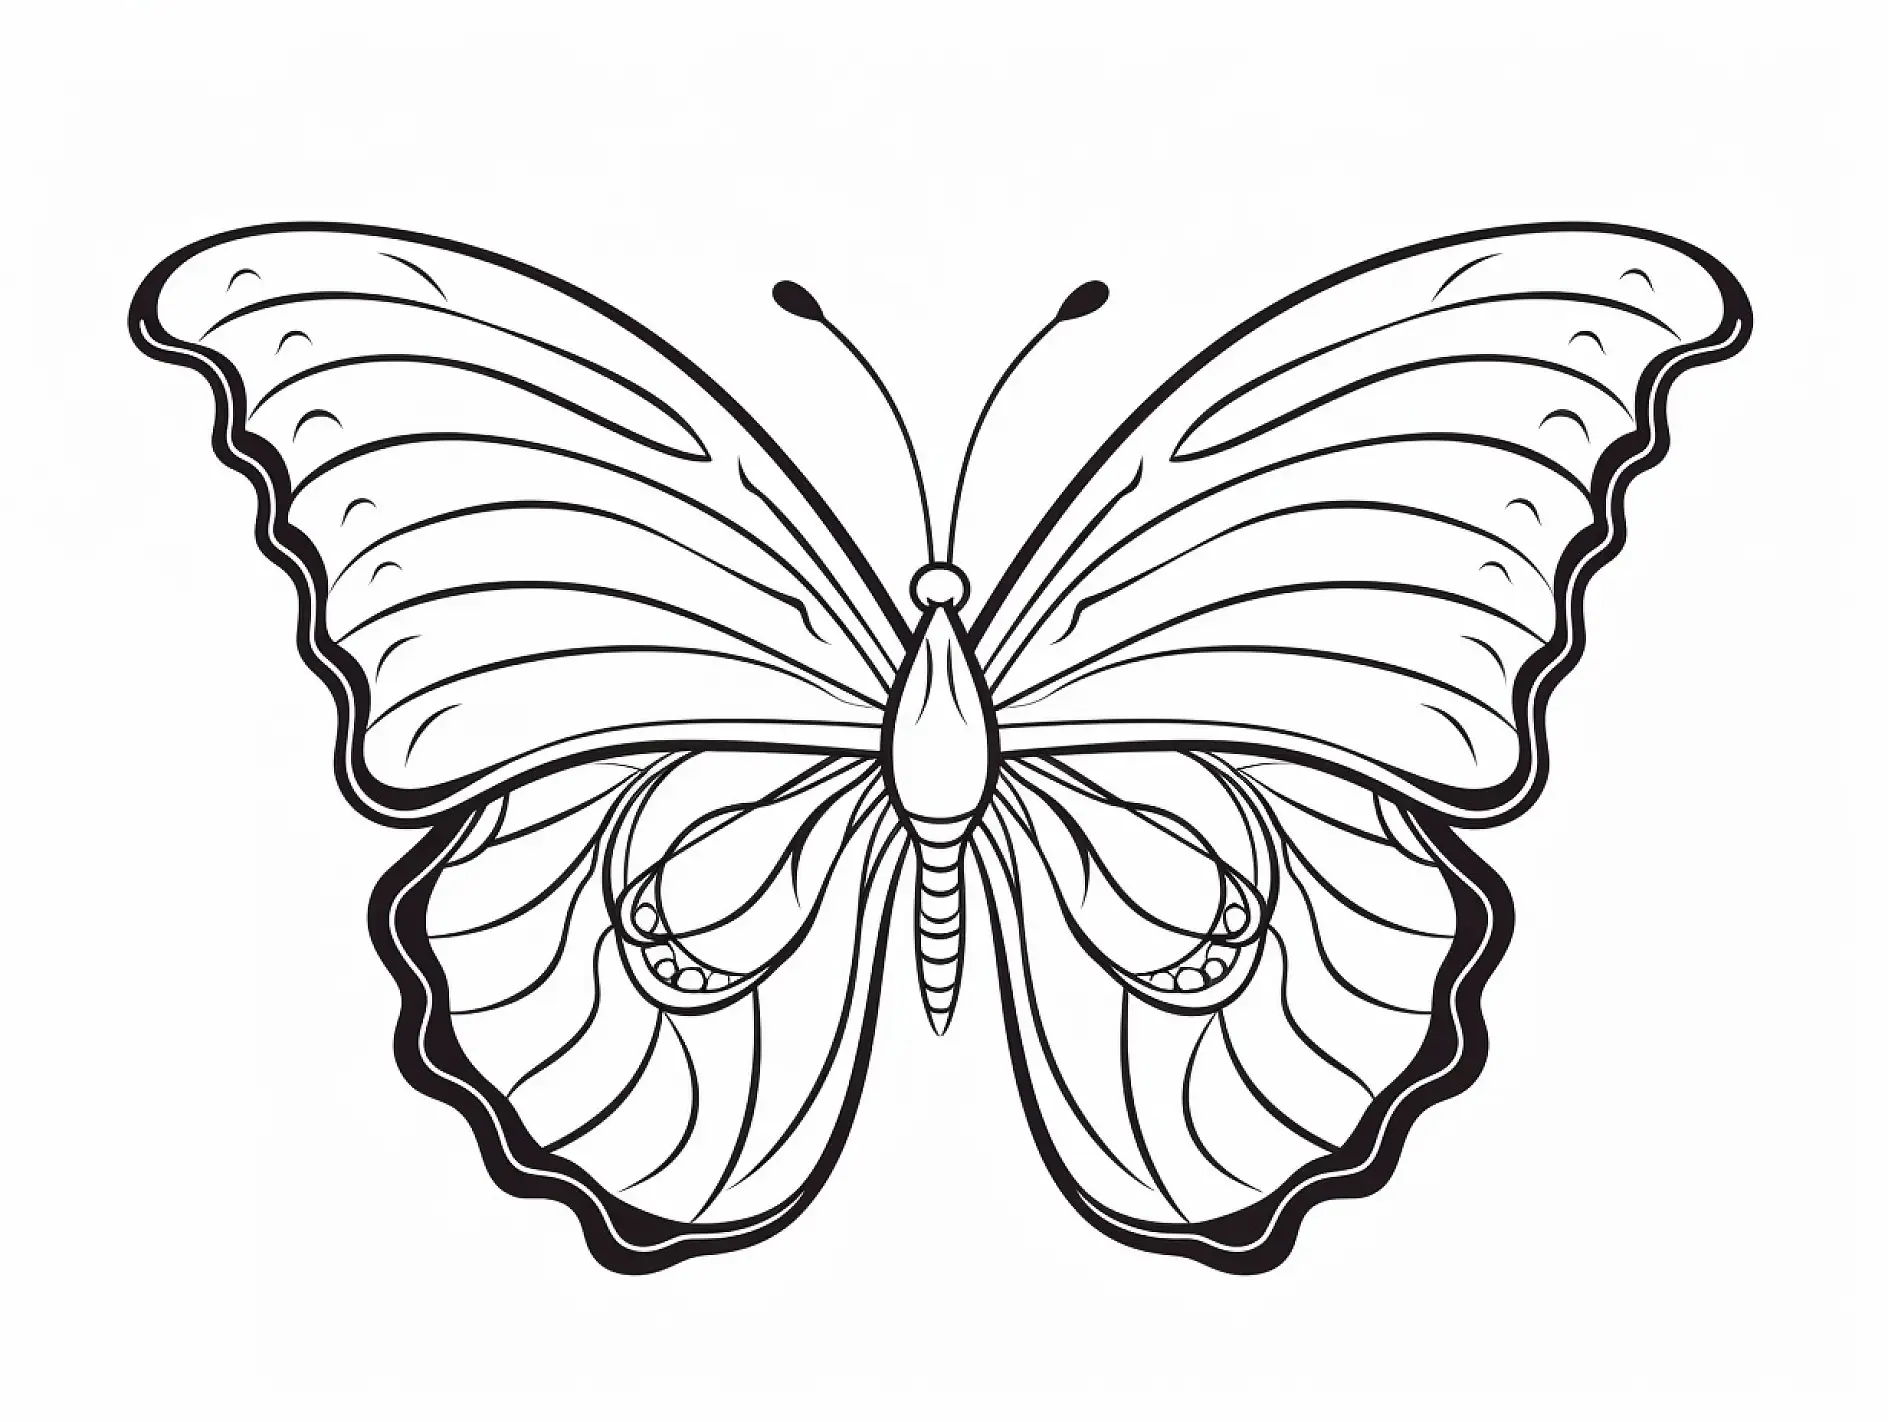 Ausmalbild Schmetterling mit geschwungenen Flügellinien